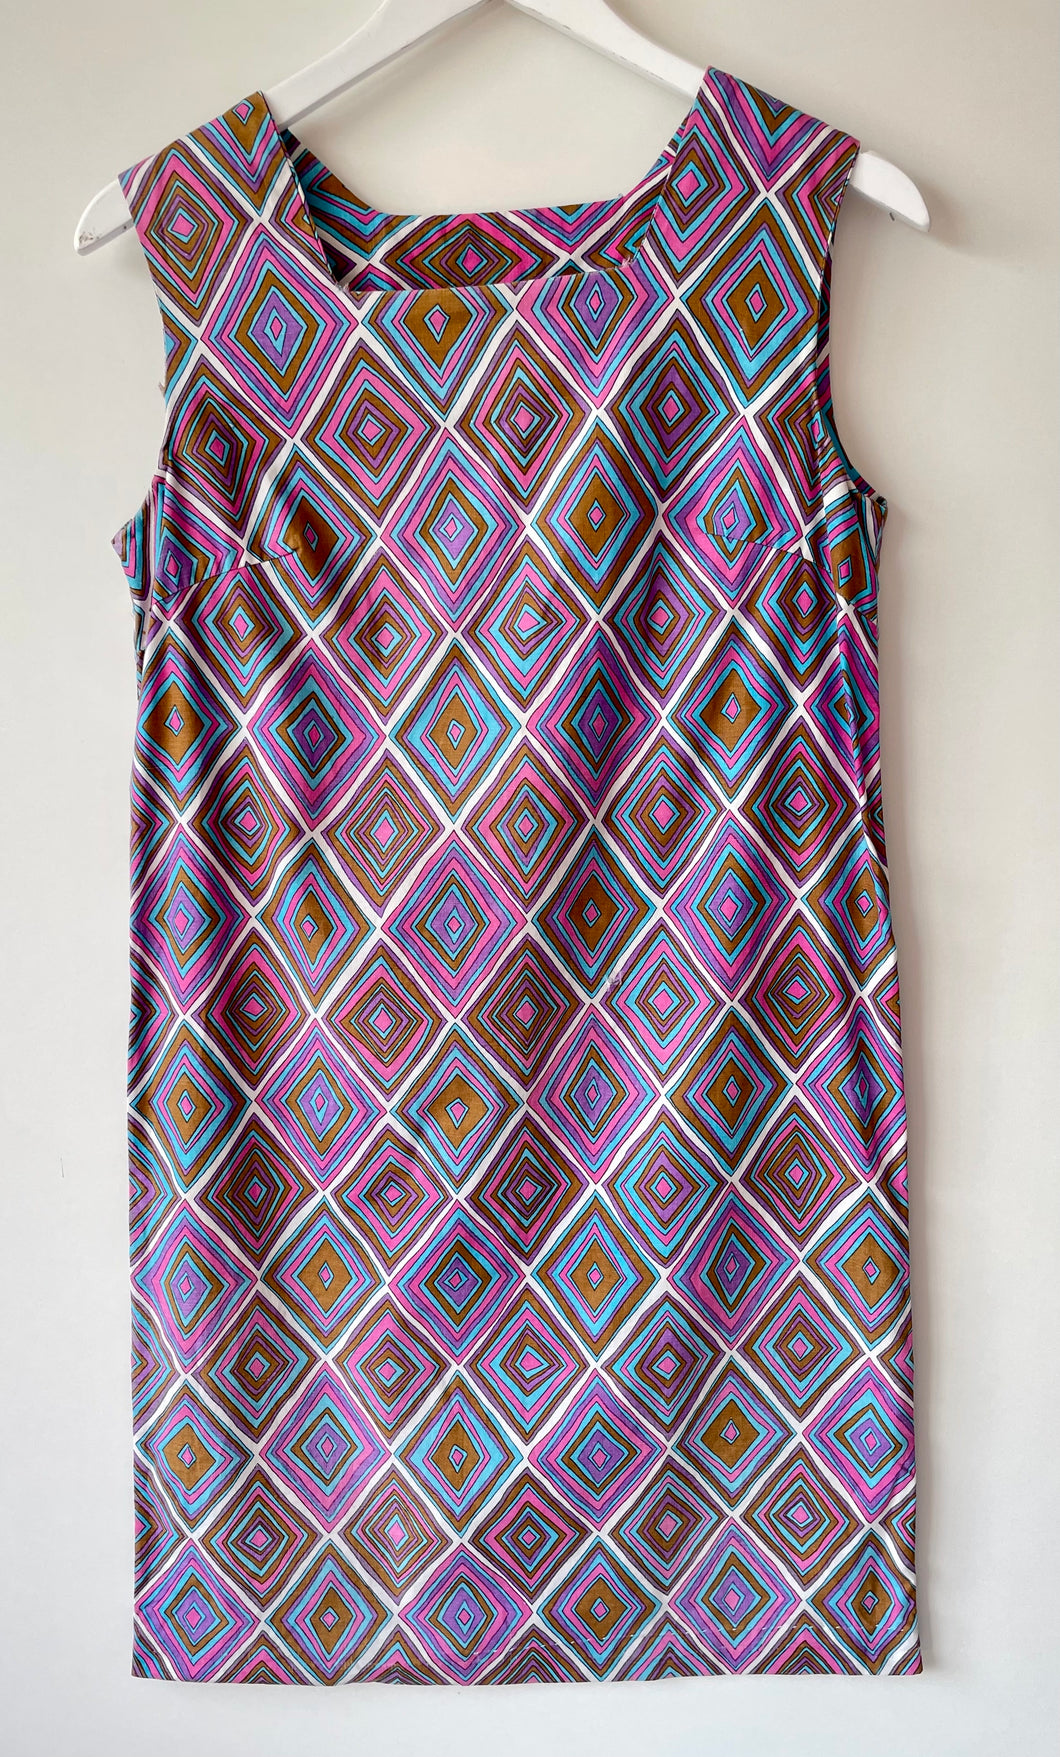 Groovy simple slip on vintage handmade sleeveless shift dress M